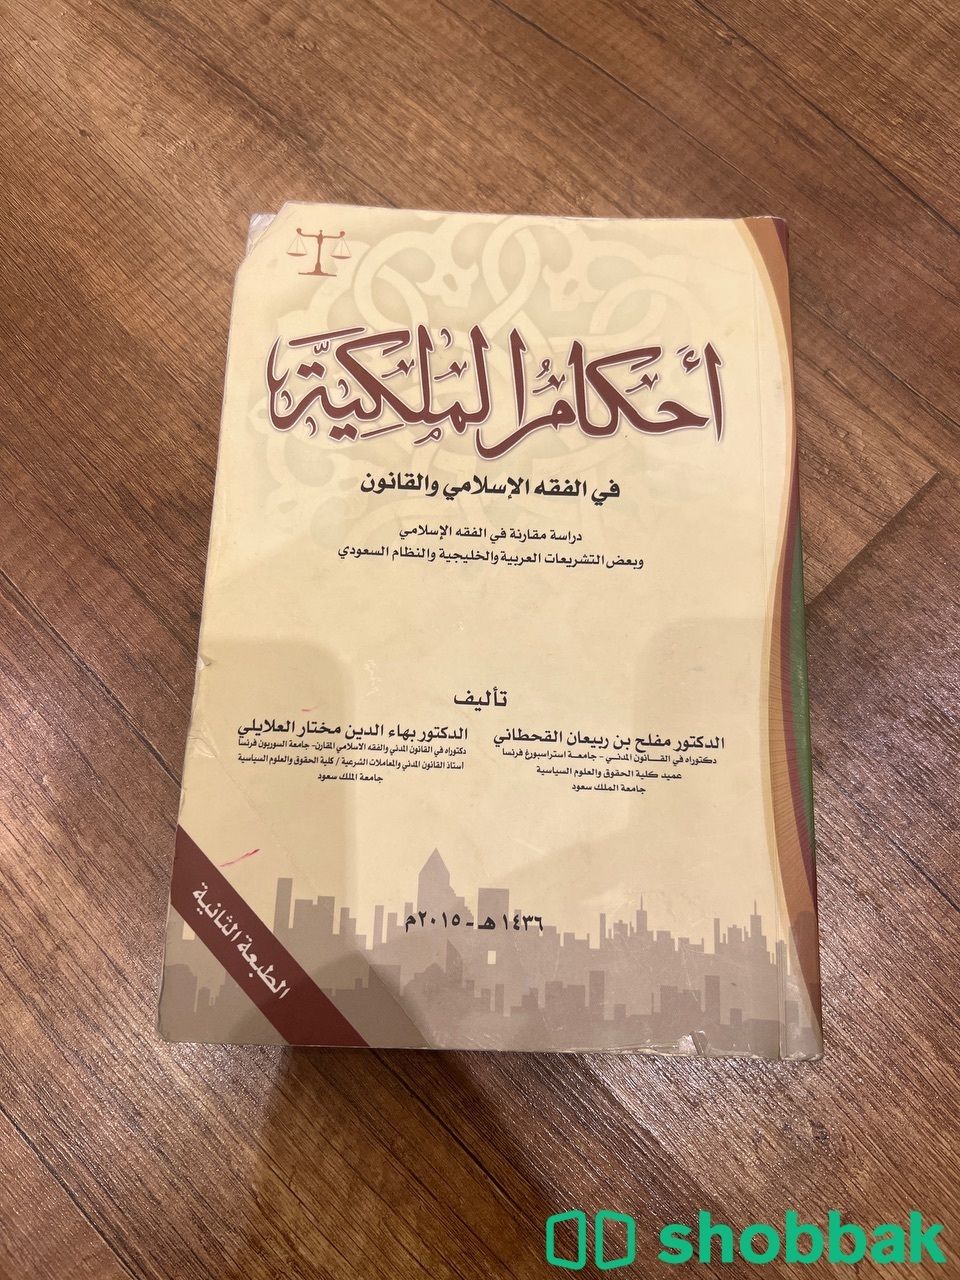  كتاب احكام الملكية في الفقة الاسلامي والقانون  شباك السعودية